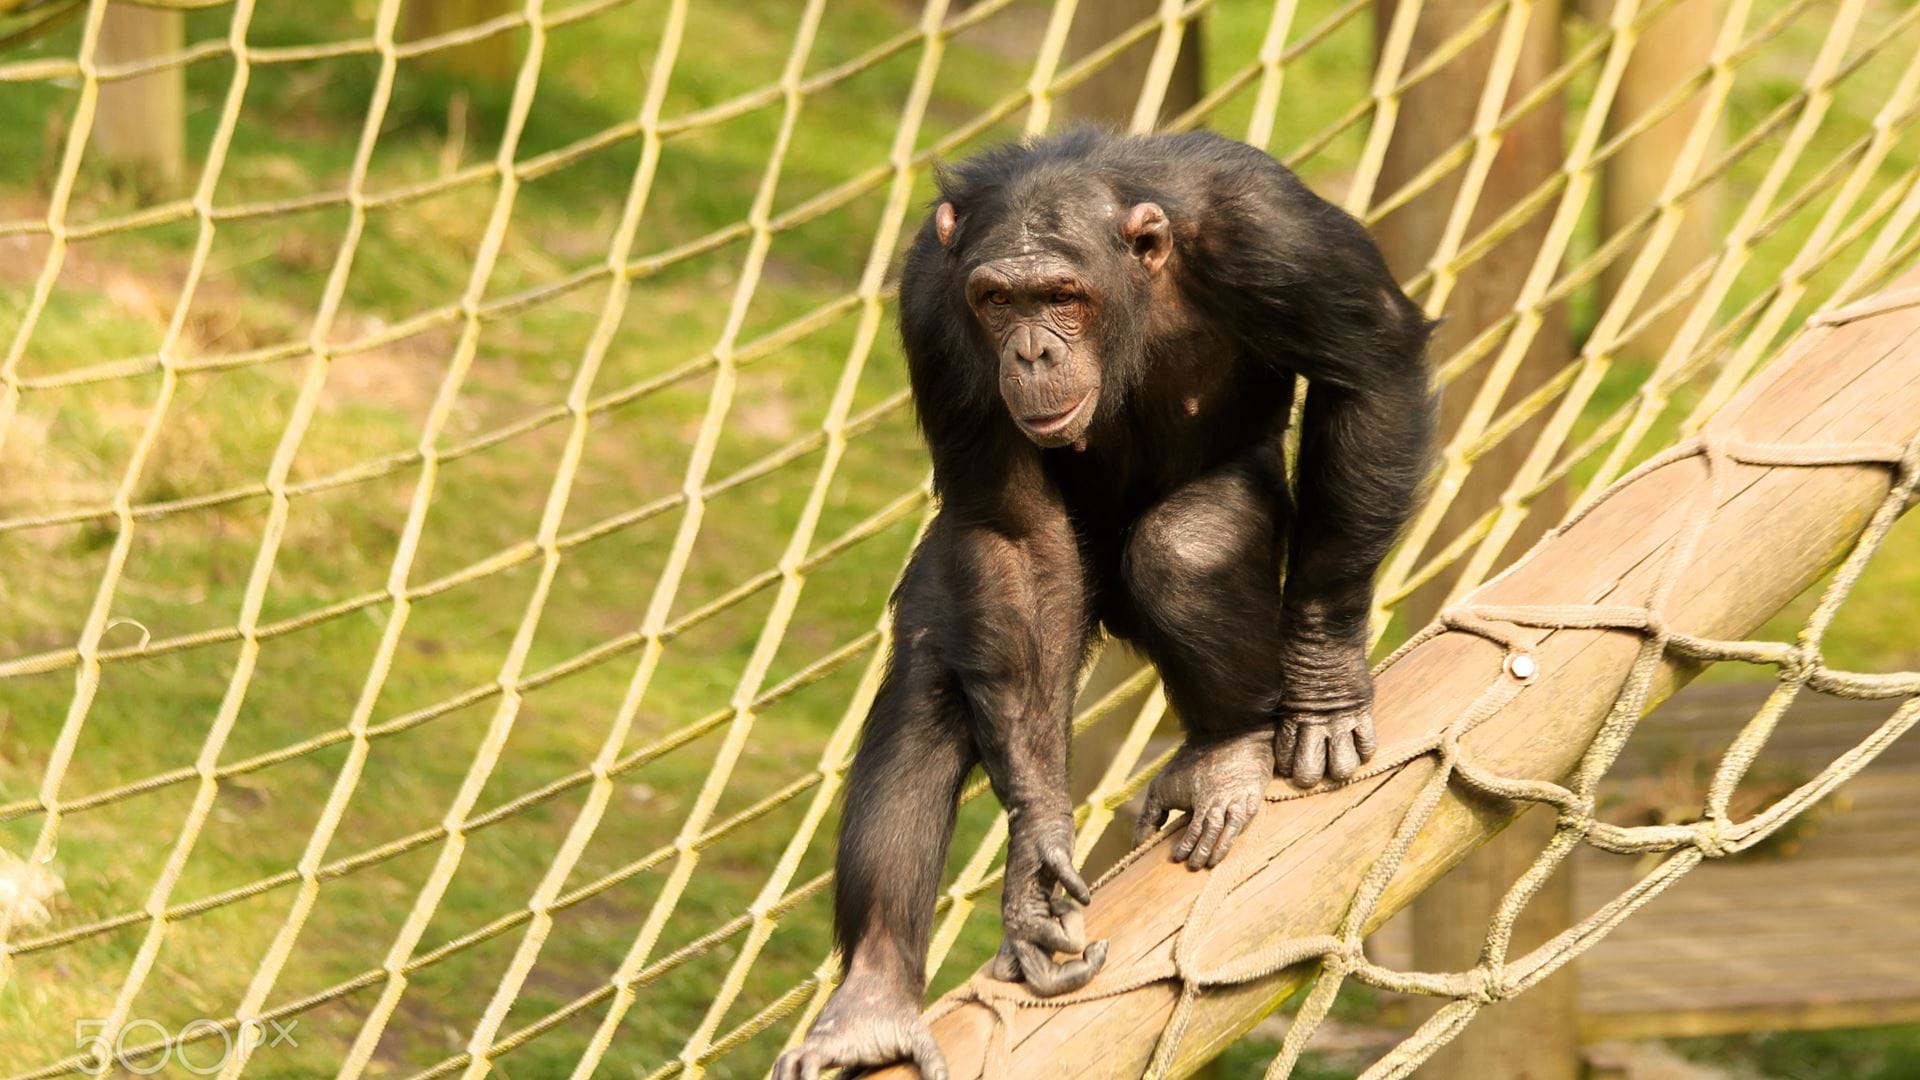 a-chimpanzee-climbs-the-ropes-at-monkey-world-dorset